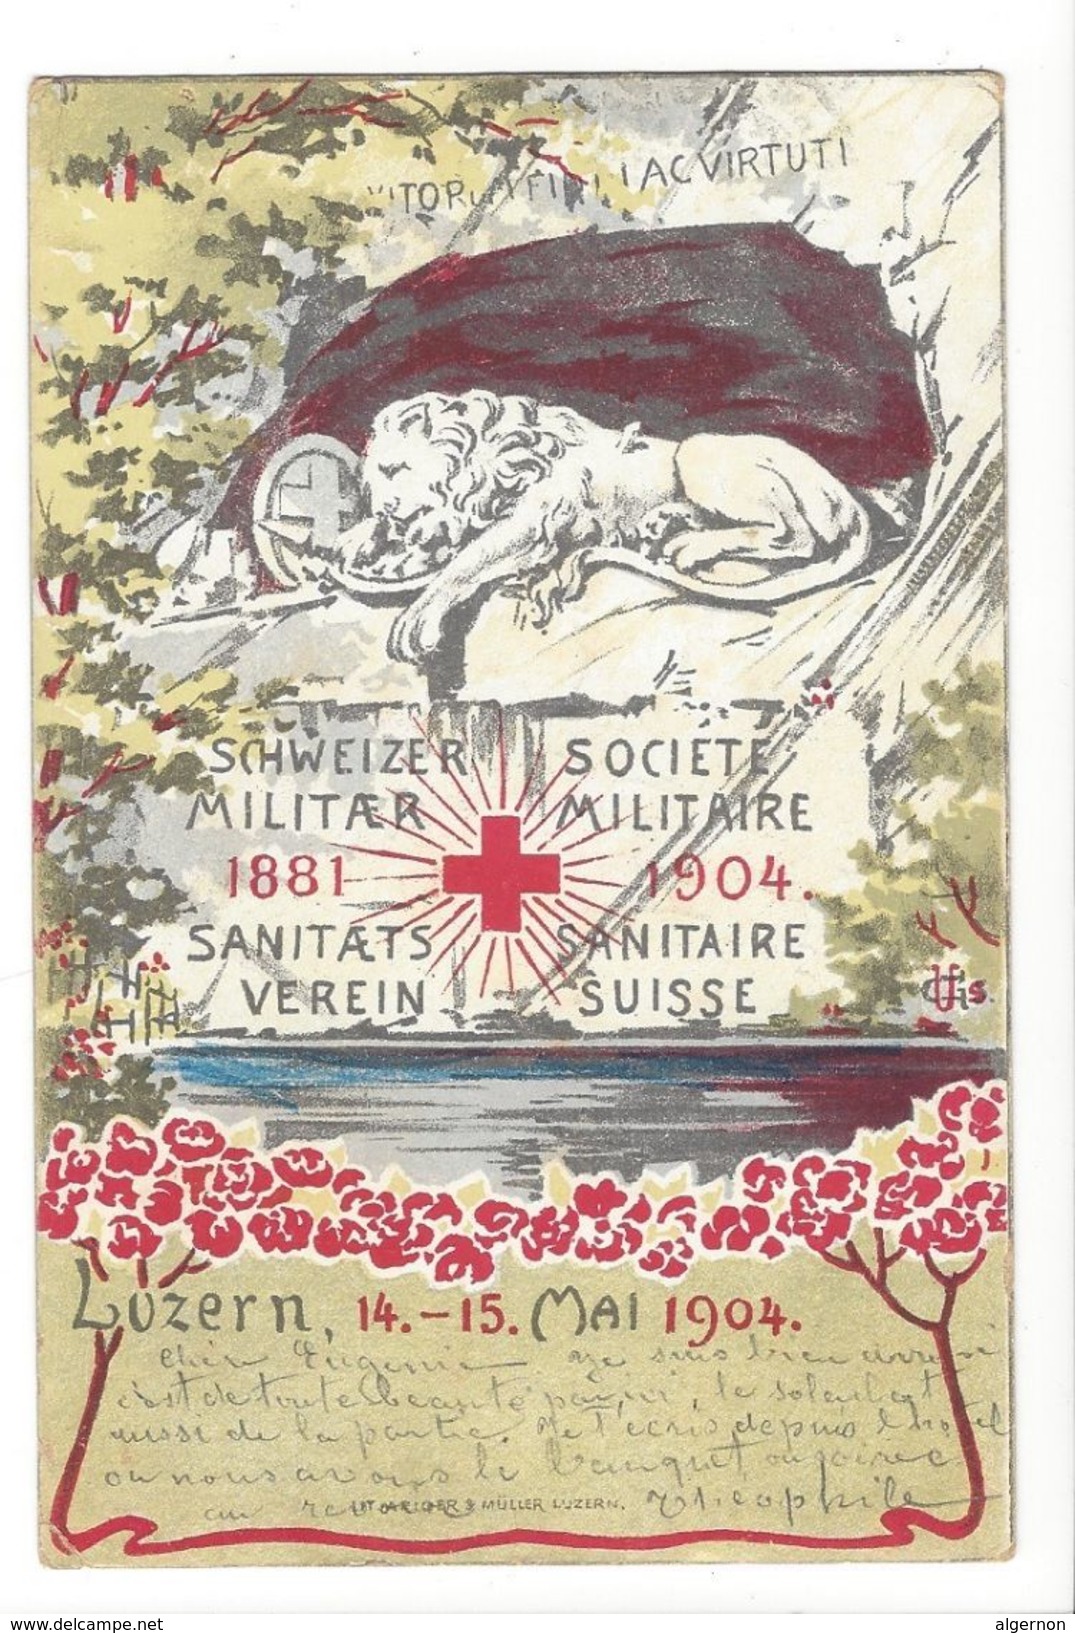 17495 - Luzern 1904 Société Militaire Sanitaire Suisse - Luzern